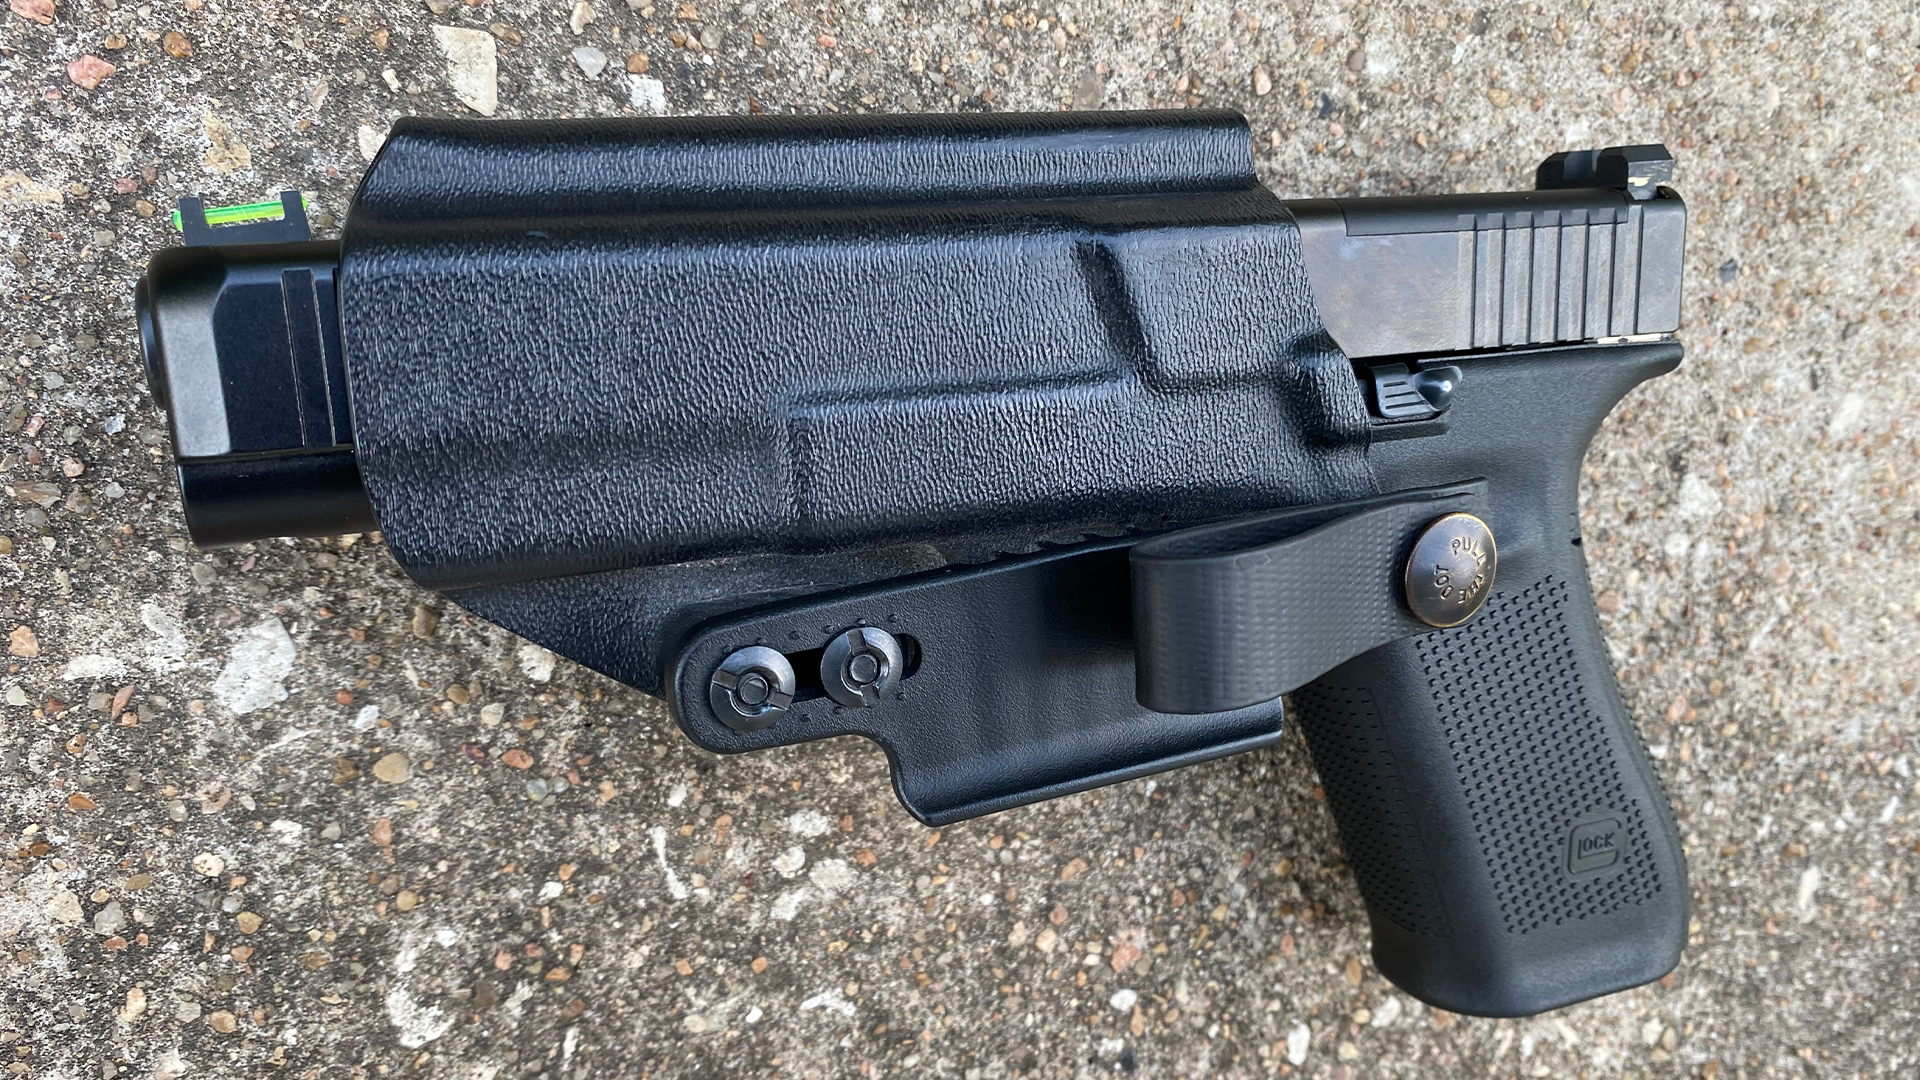 XS fiber-optic kit in Glock pistol (holstered)